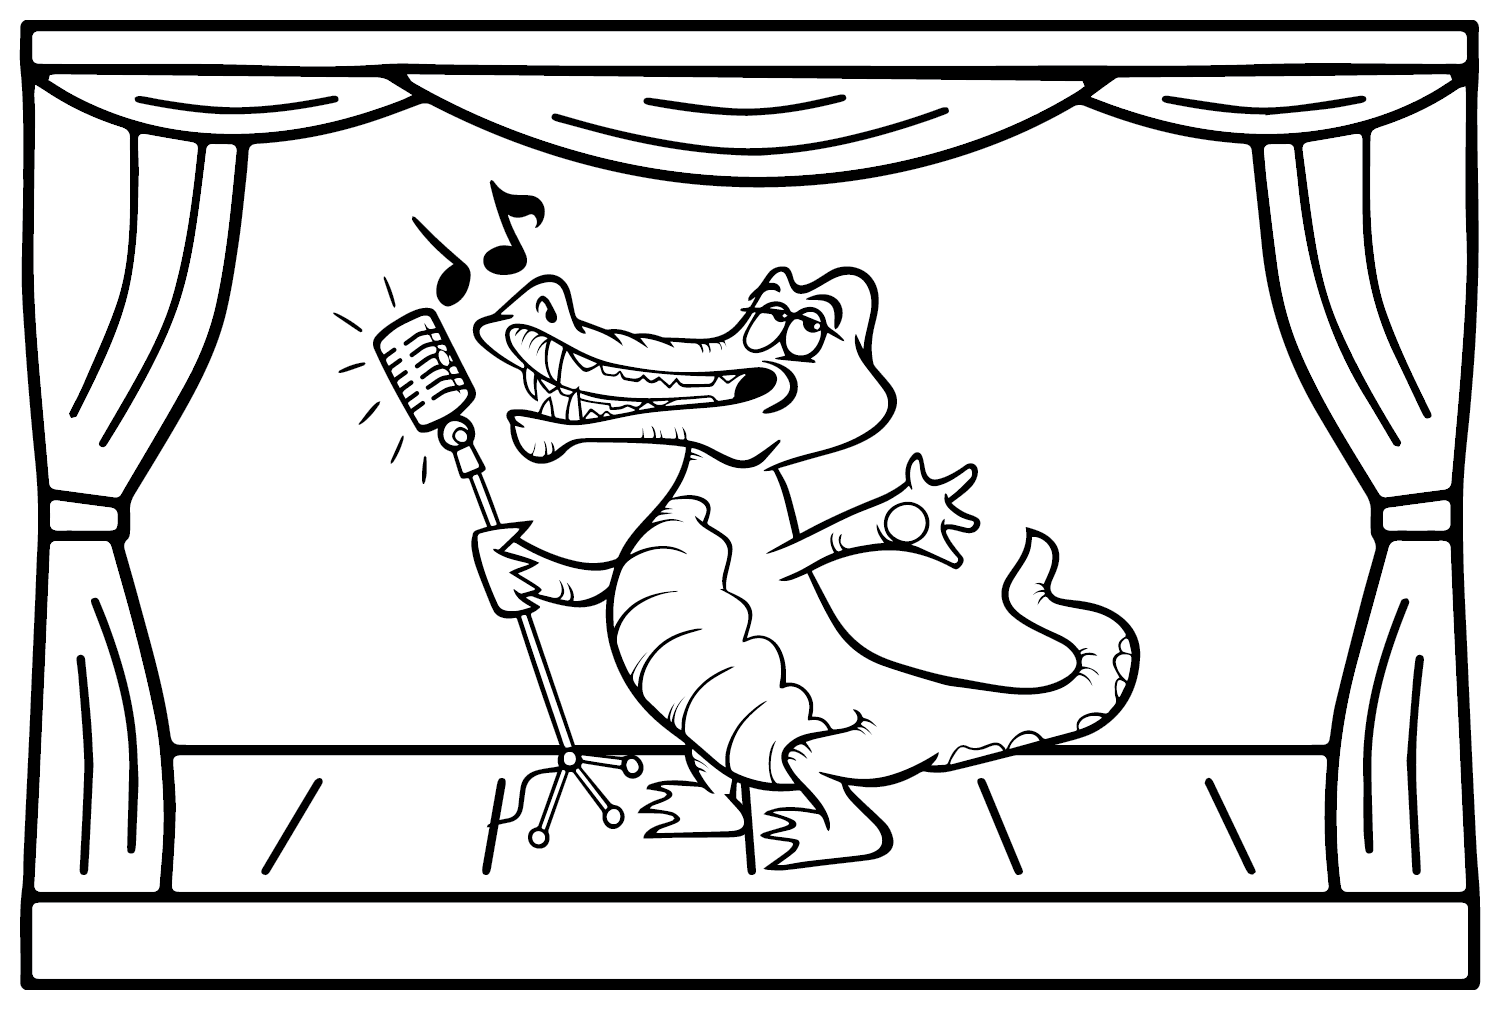 Krokodil-Zeichnungs-Malvorlage von Crocodile